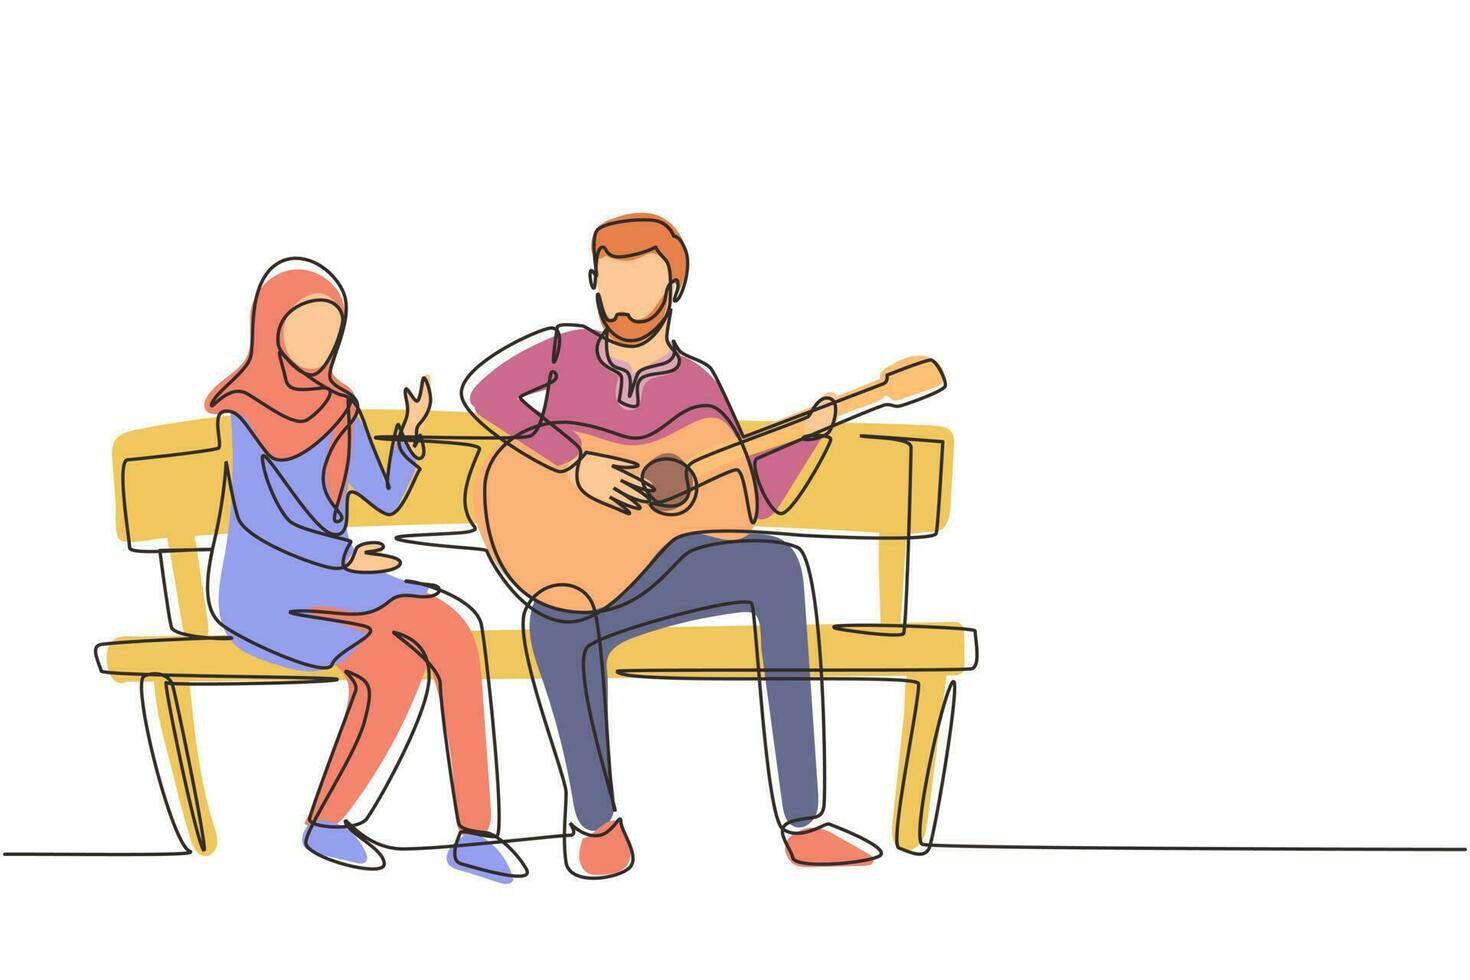 disegno a linea continua singola gente araba seduta su una panca di legno nel parco. coppia in data, uomo che suona musica alla chitarra, ragazza ascolta e canta insieme. illustrazione grafica vettoriale di una linea